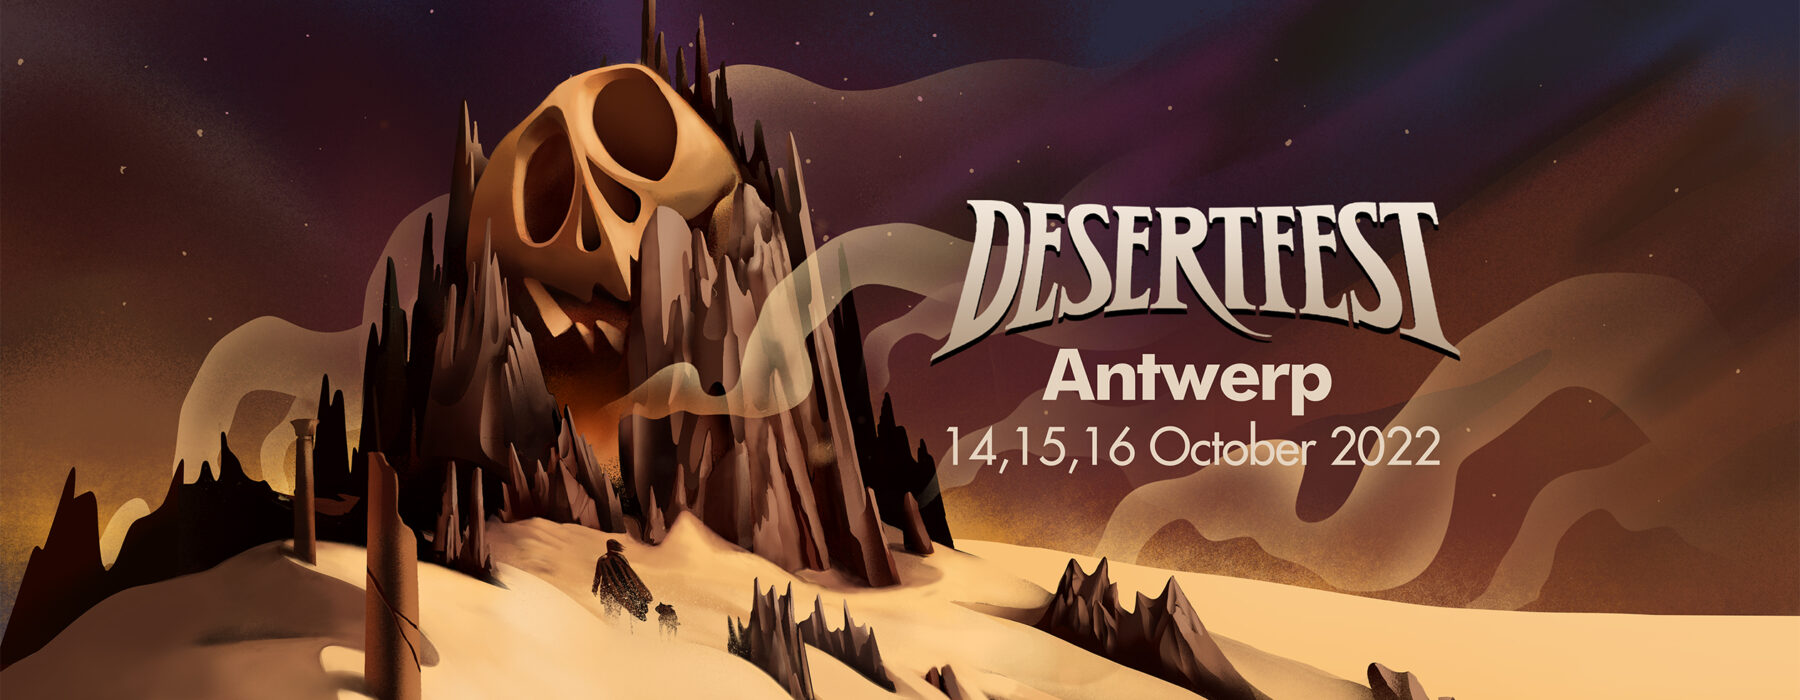 DesertFest Antwerp 2022 Playlist